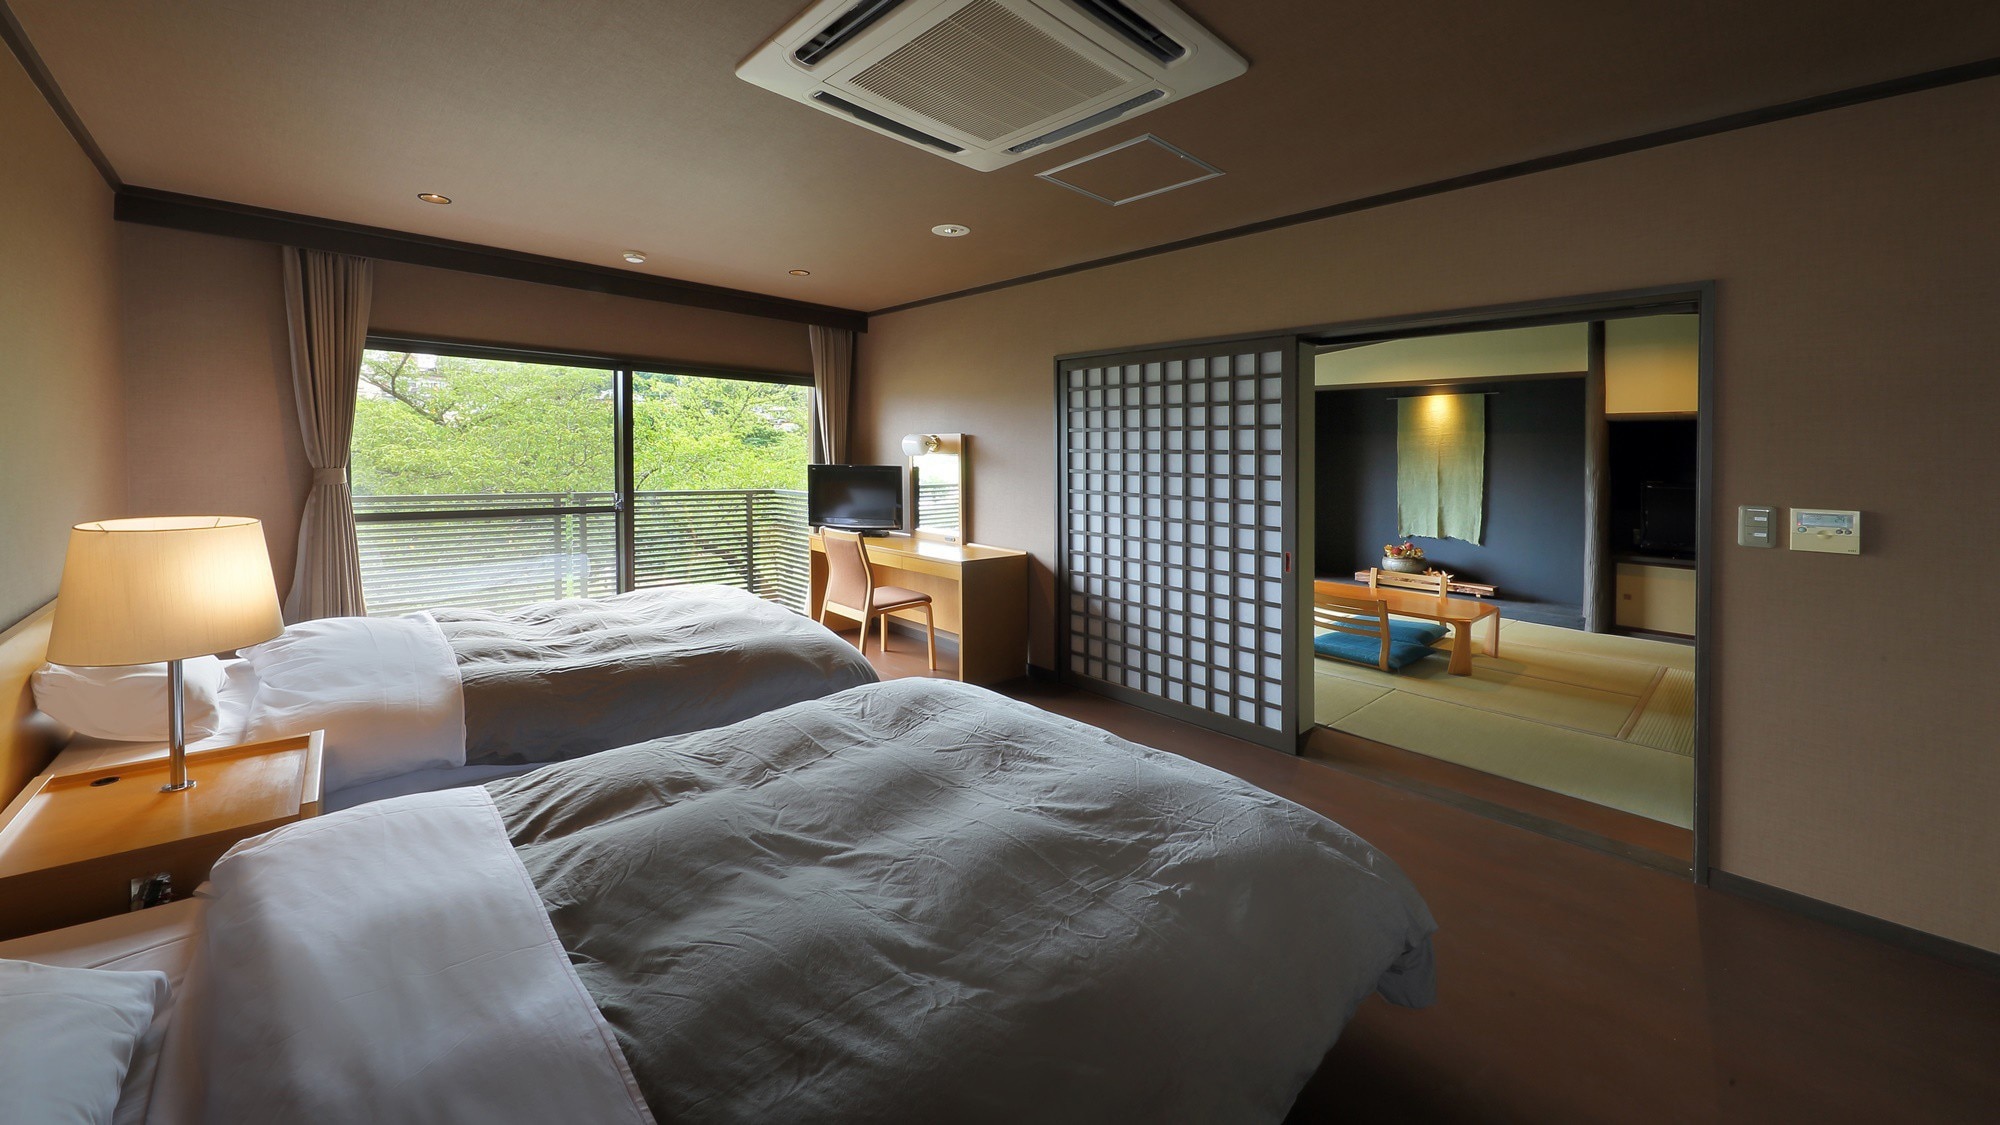 【小型套房】有8張榻榻米的日式房間和西式房間。它有一個室內浴池，因此您可以放鬆身心。